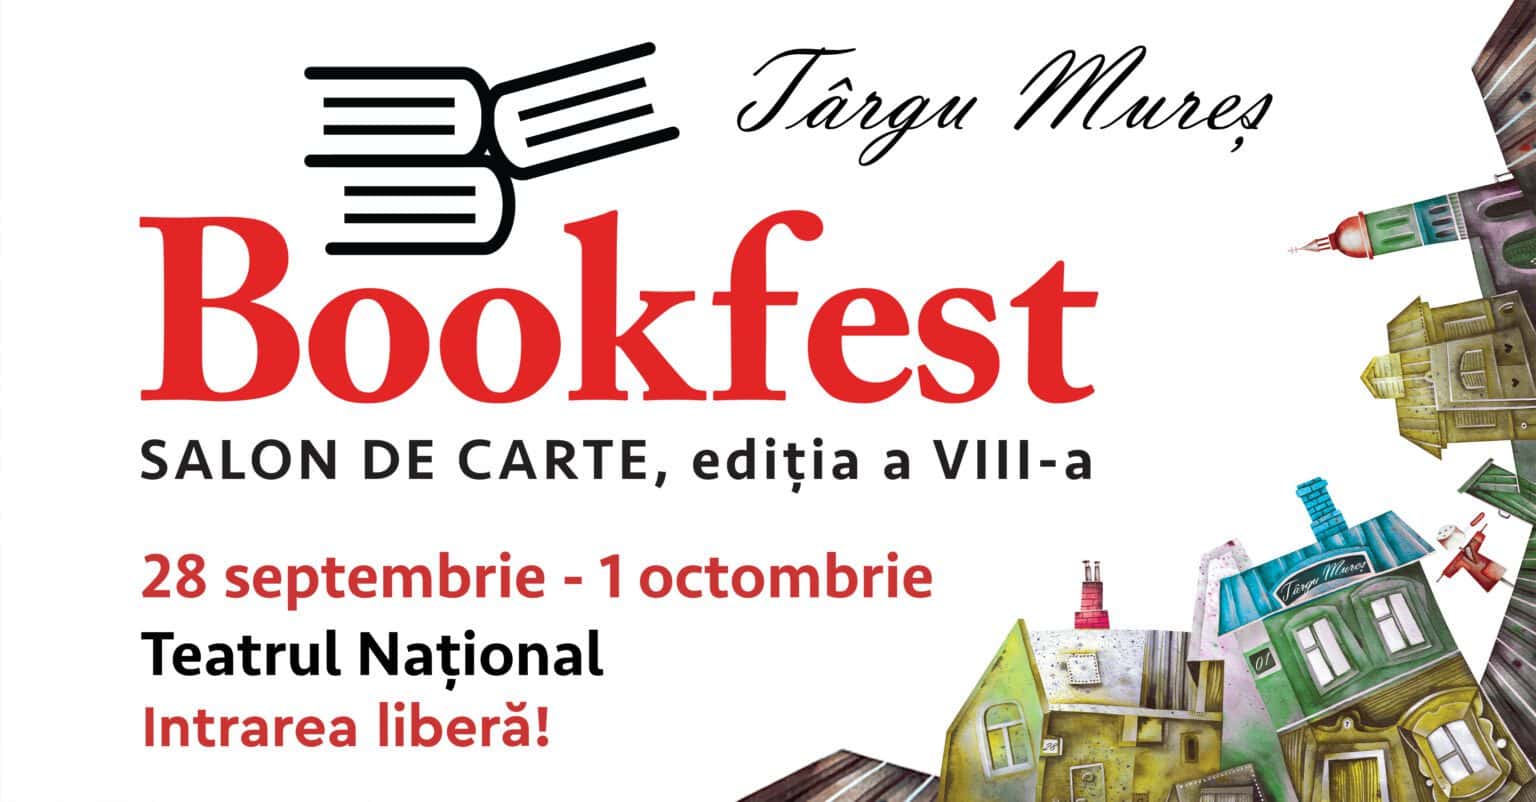 Nume mari ale literaturii vin la Bookfest Târgu Mureș